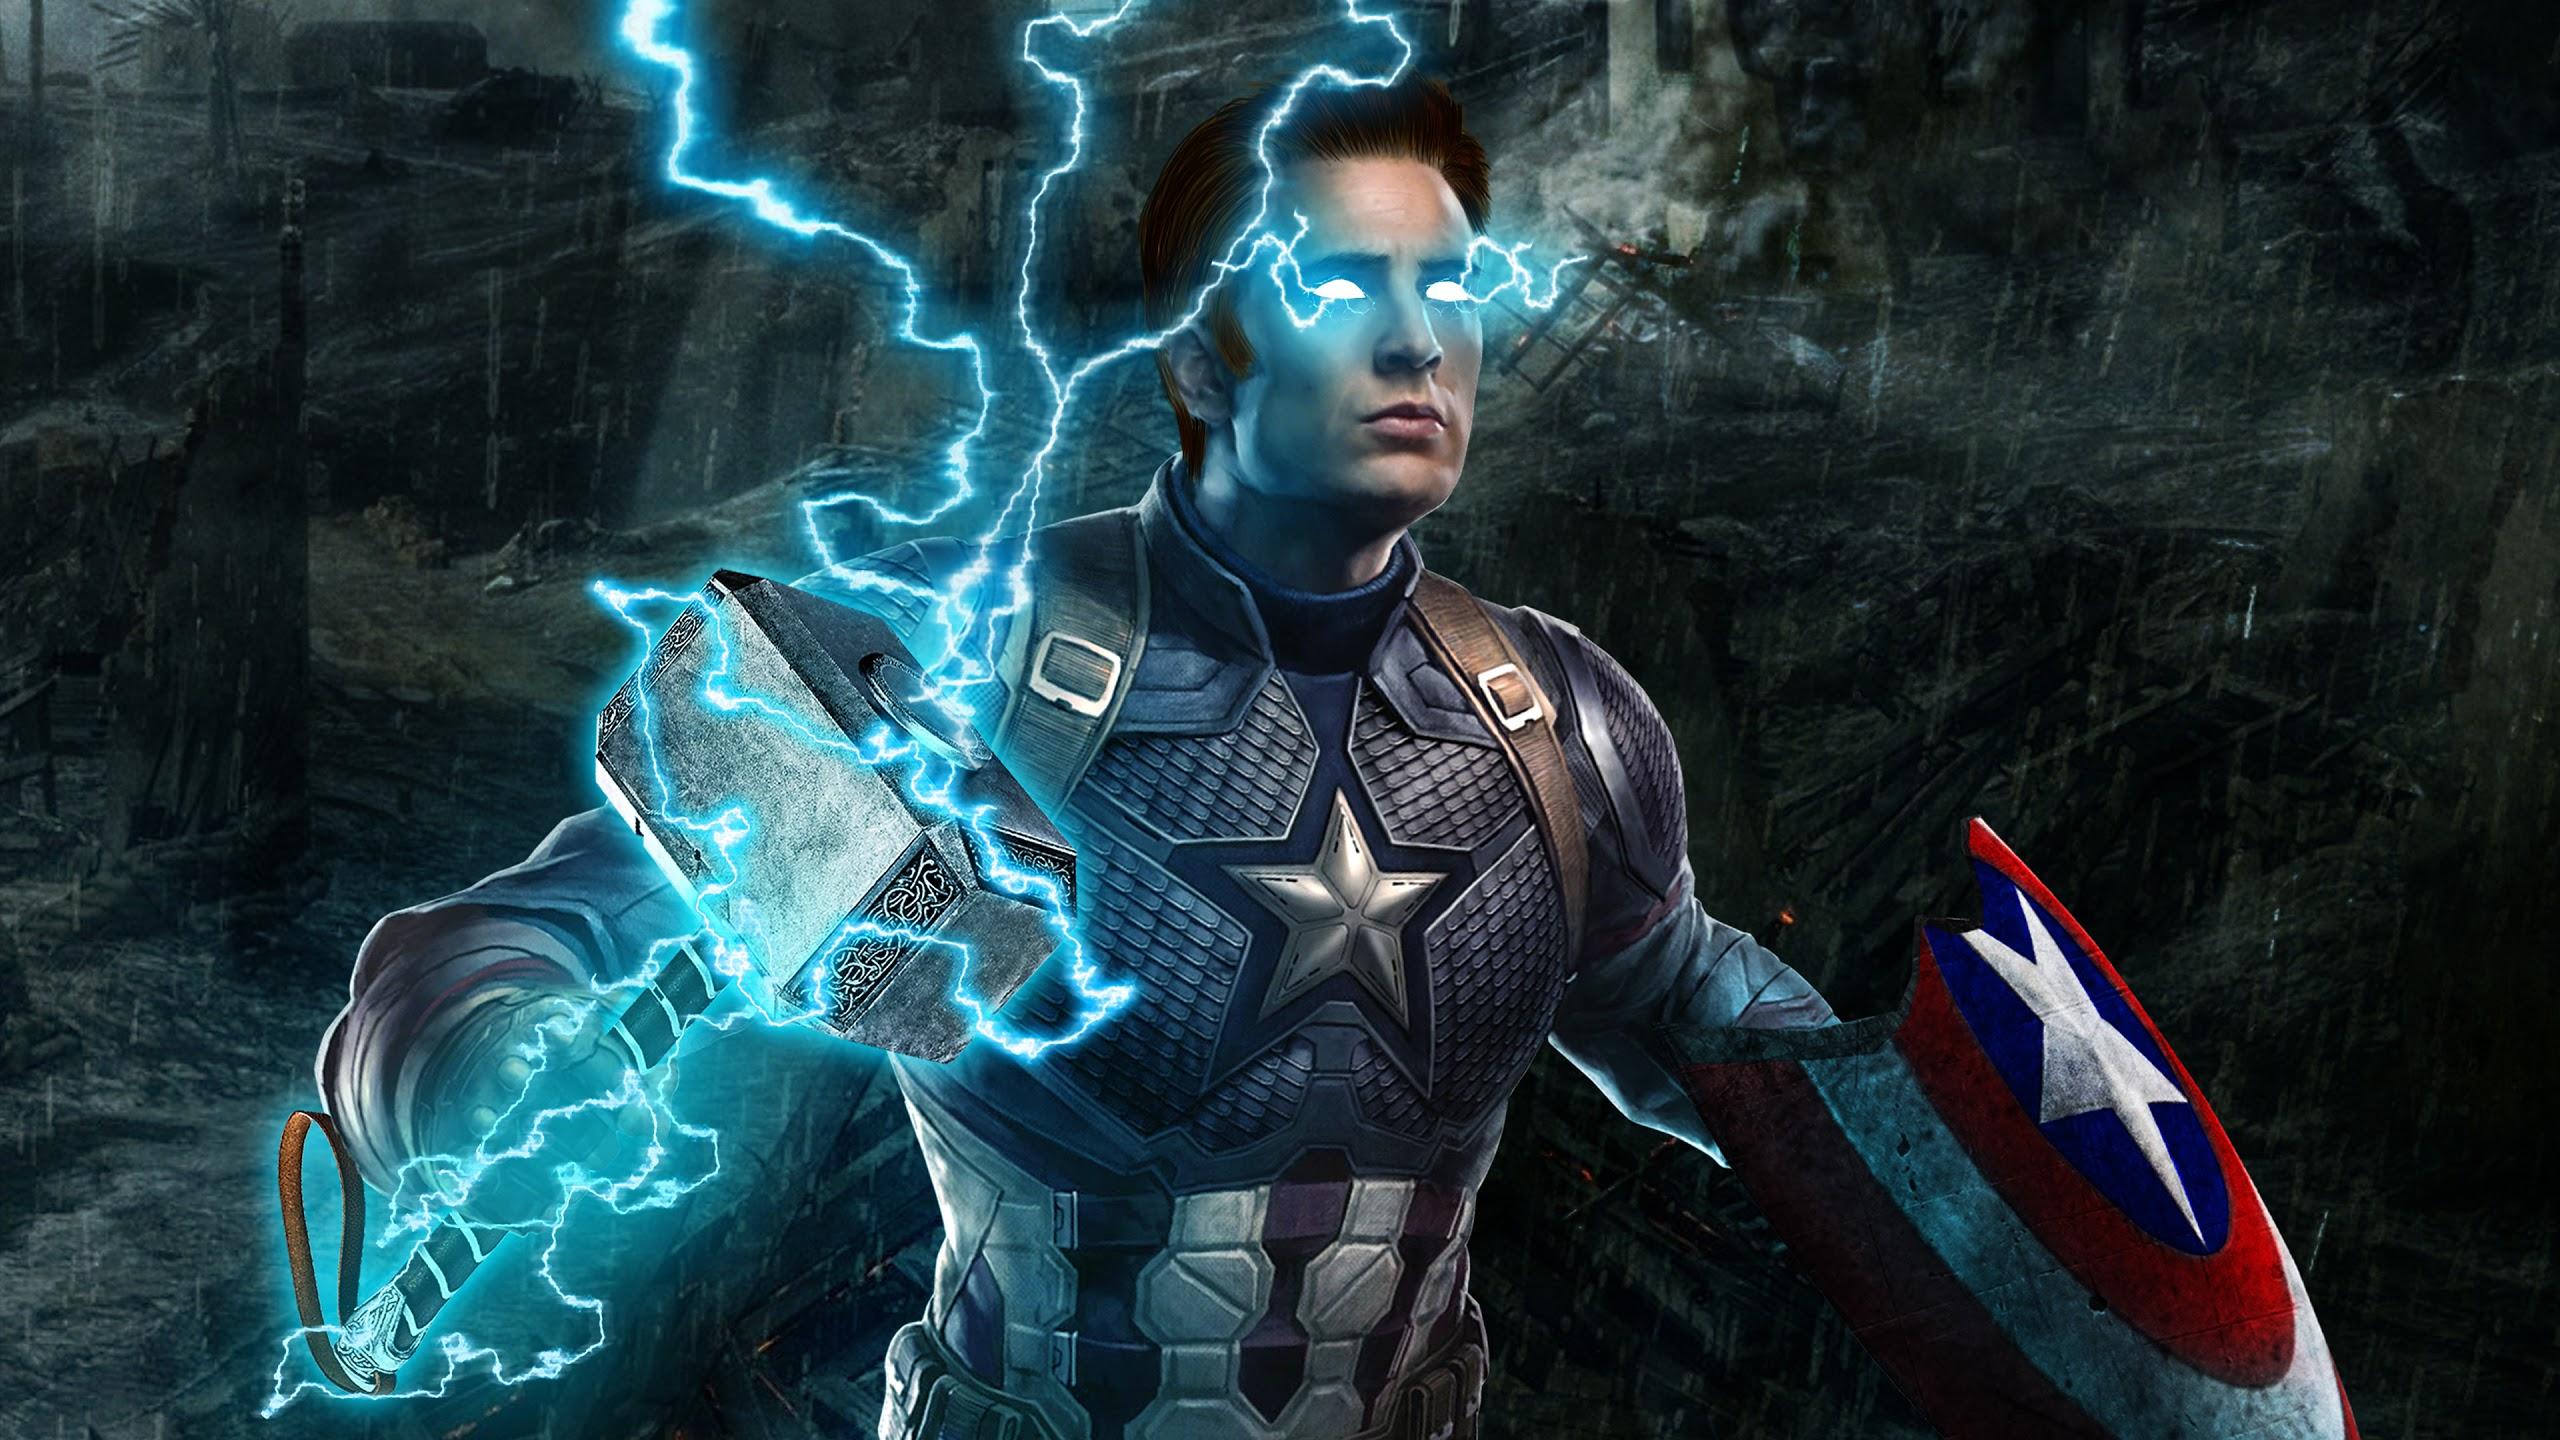 Avengers: Endgame, Captain America, Thor Hammer, Lightning, 4K